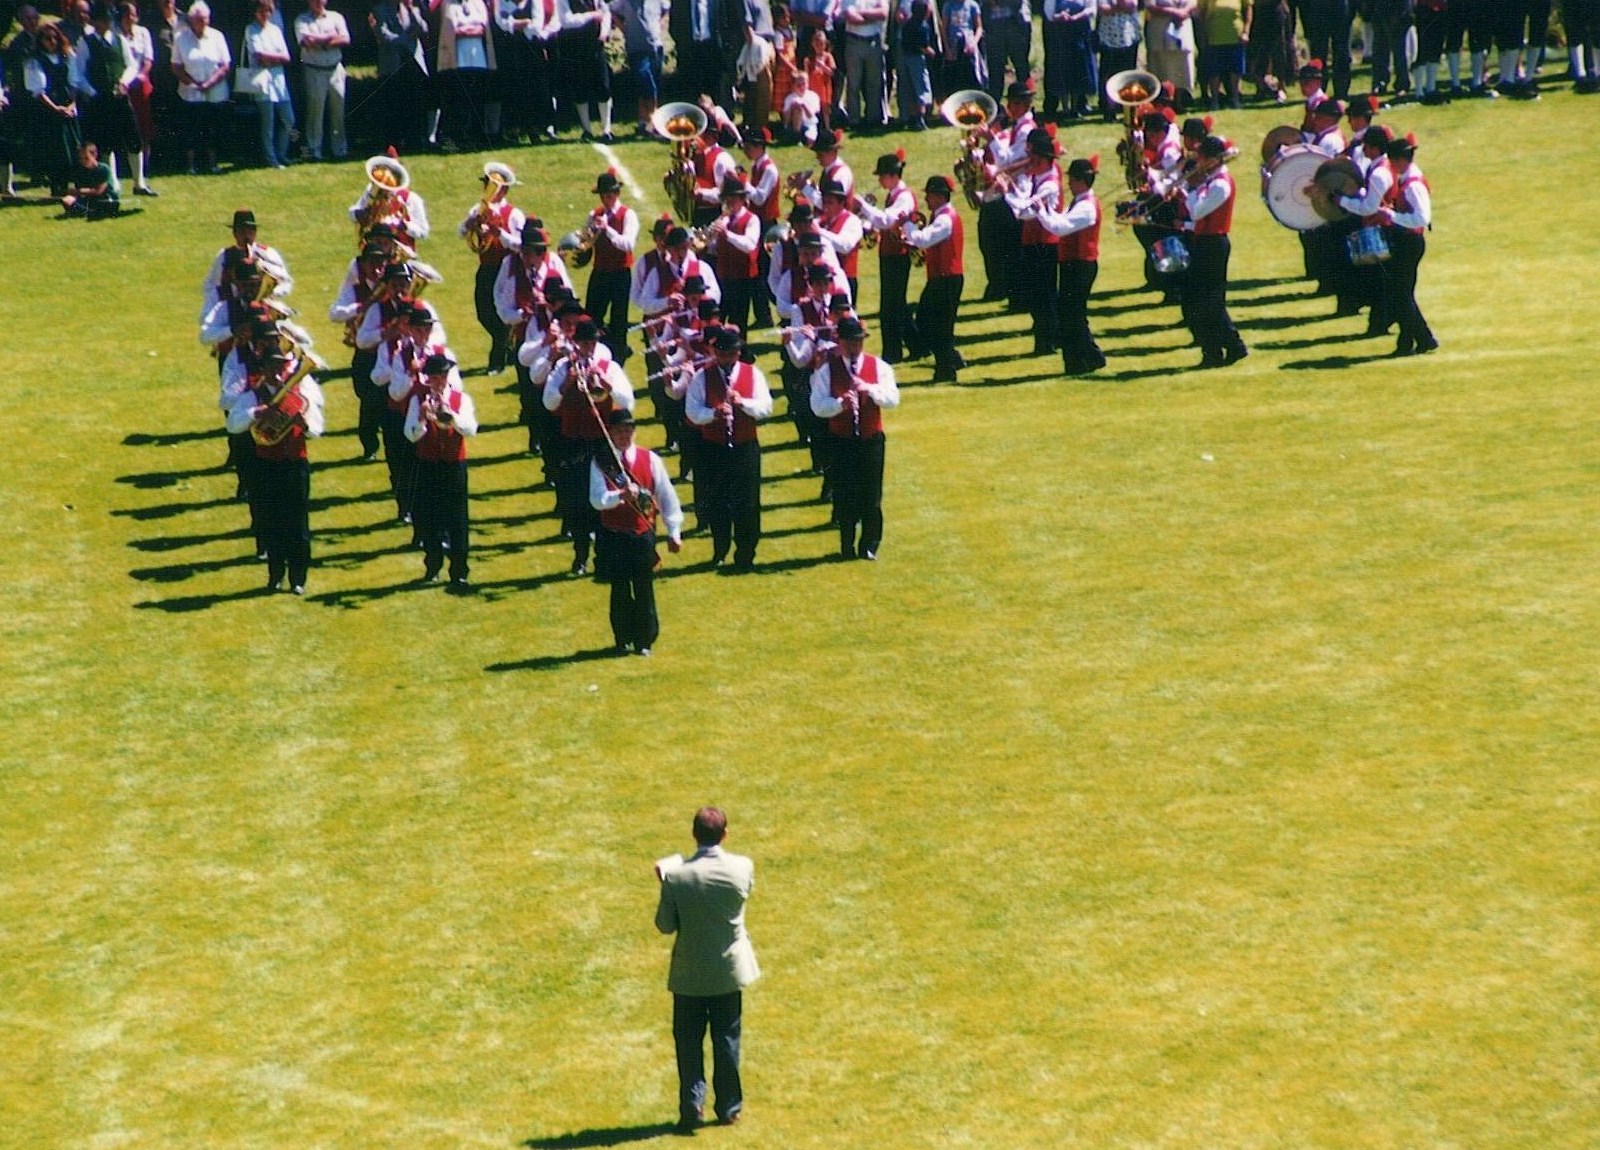 Marschwertung 2001 in Weißkirchen